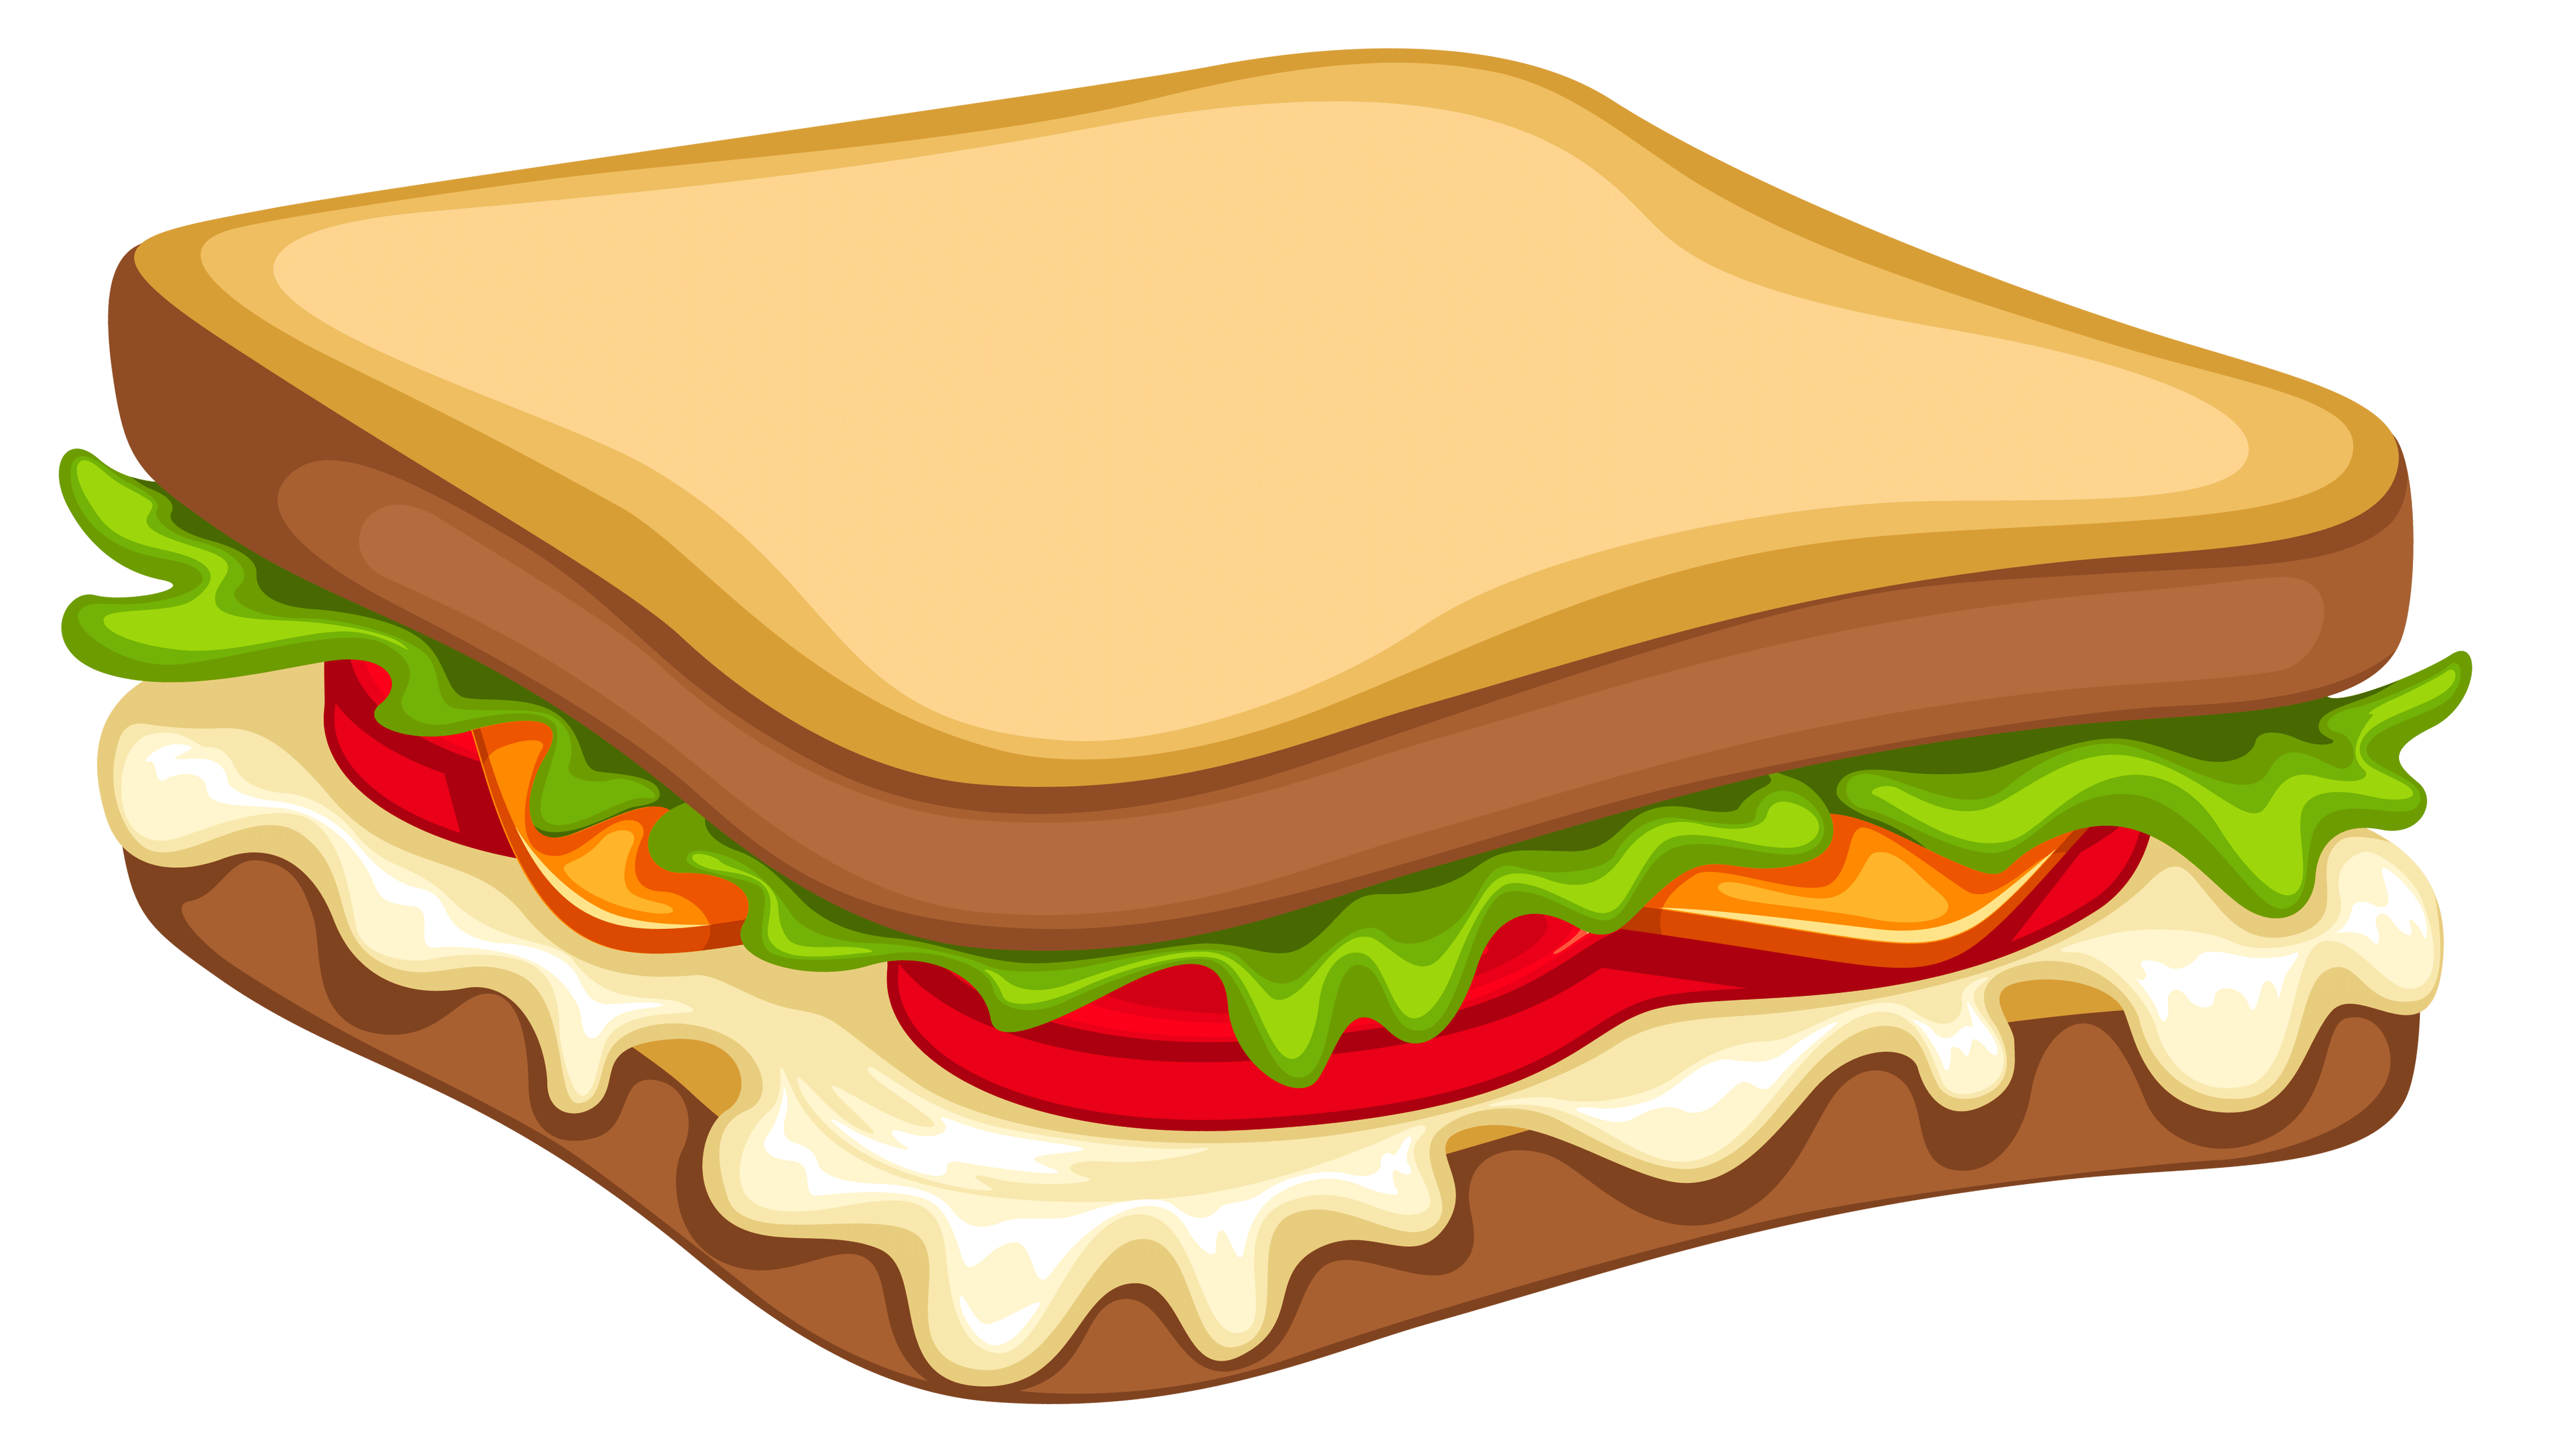 Sandwich clipart image